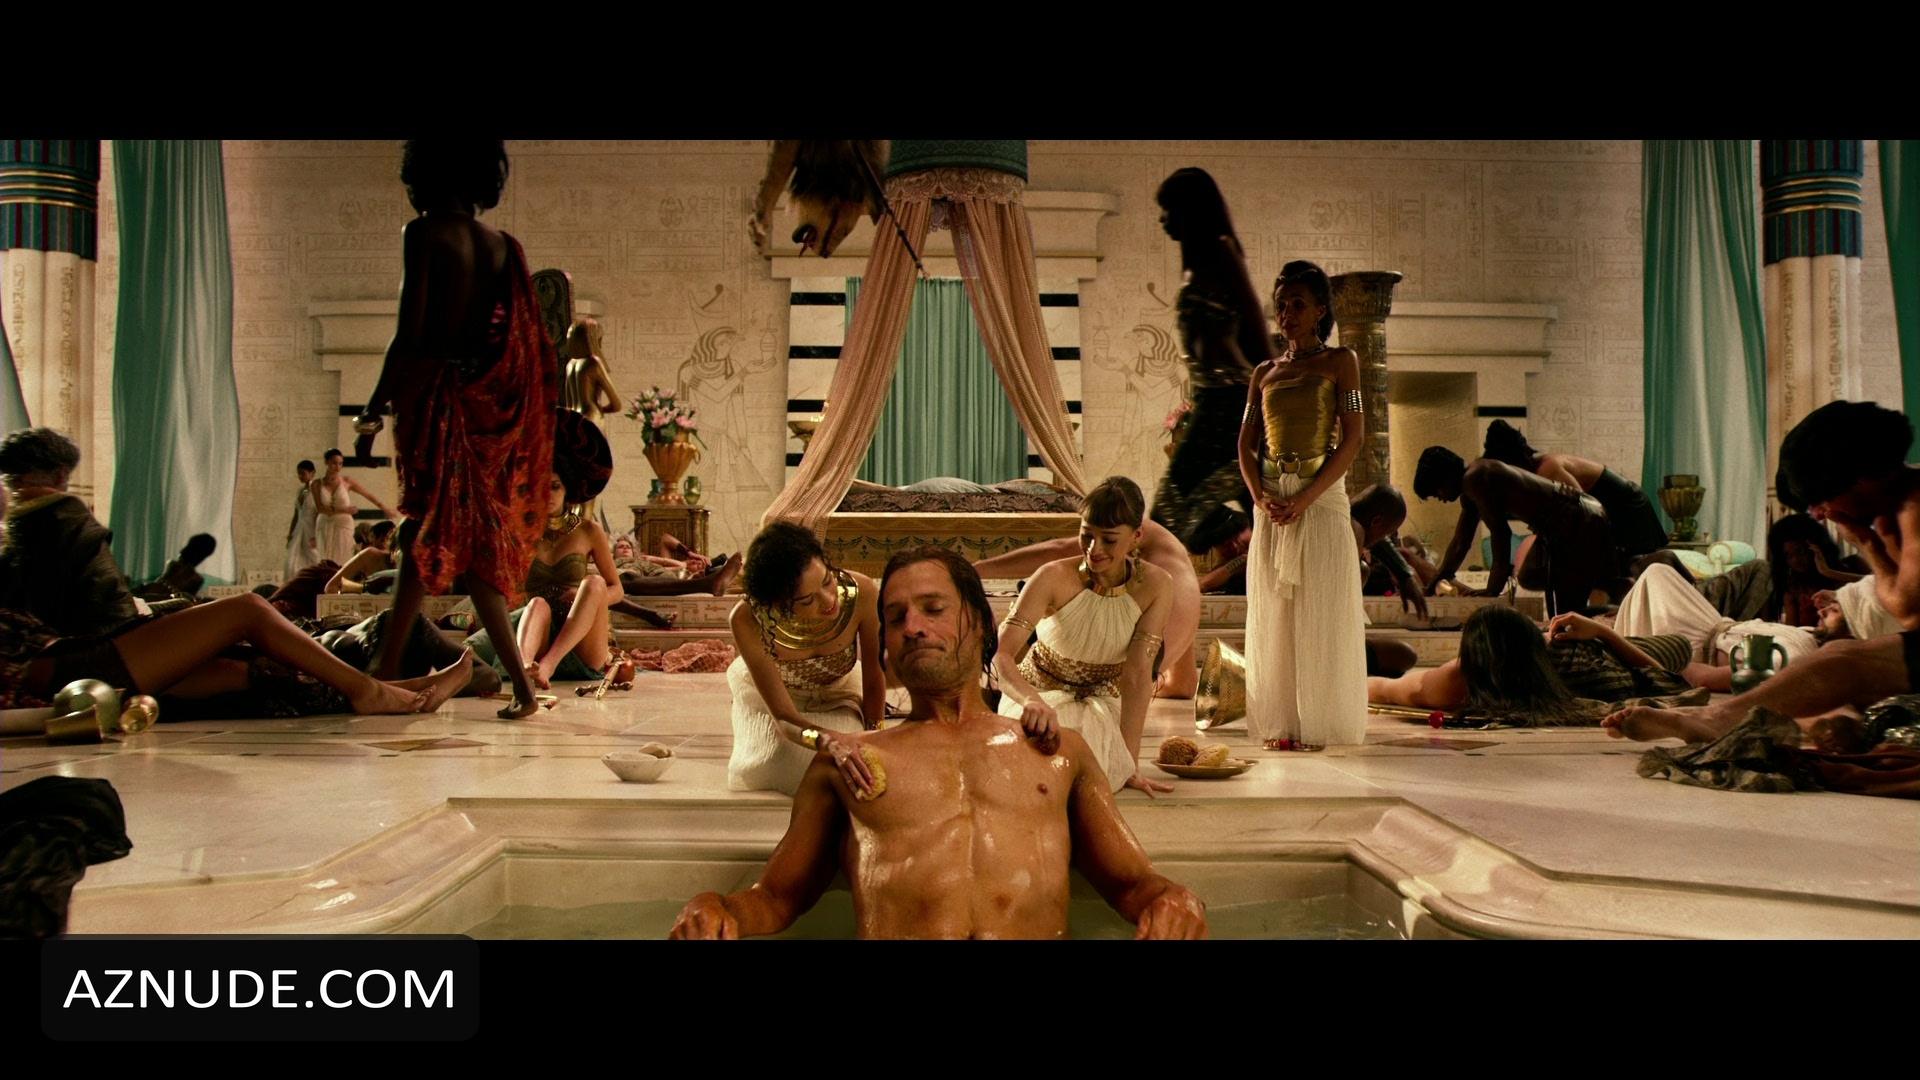 Gods Of Egypt Nude Scenes Aznude Men